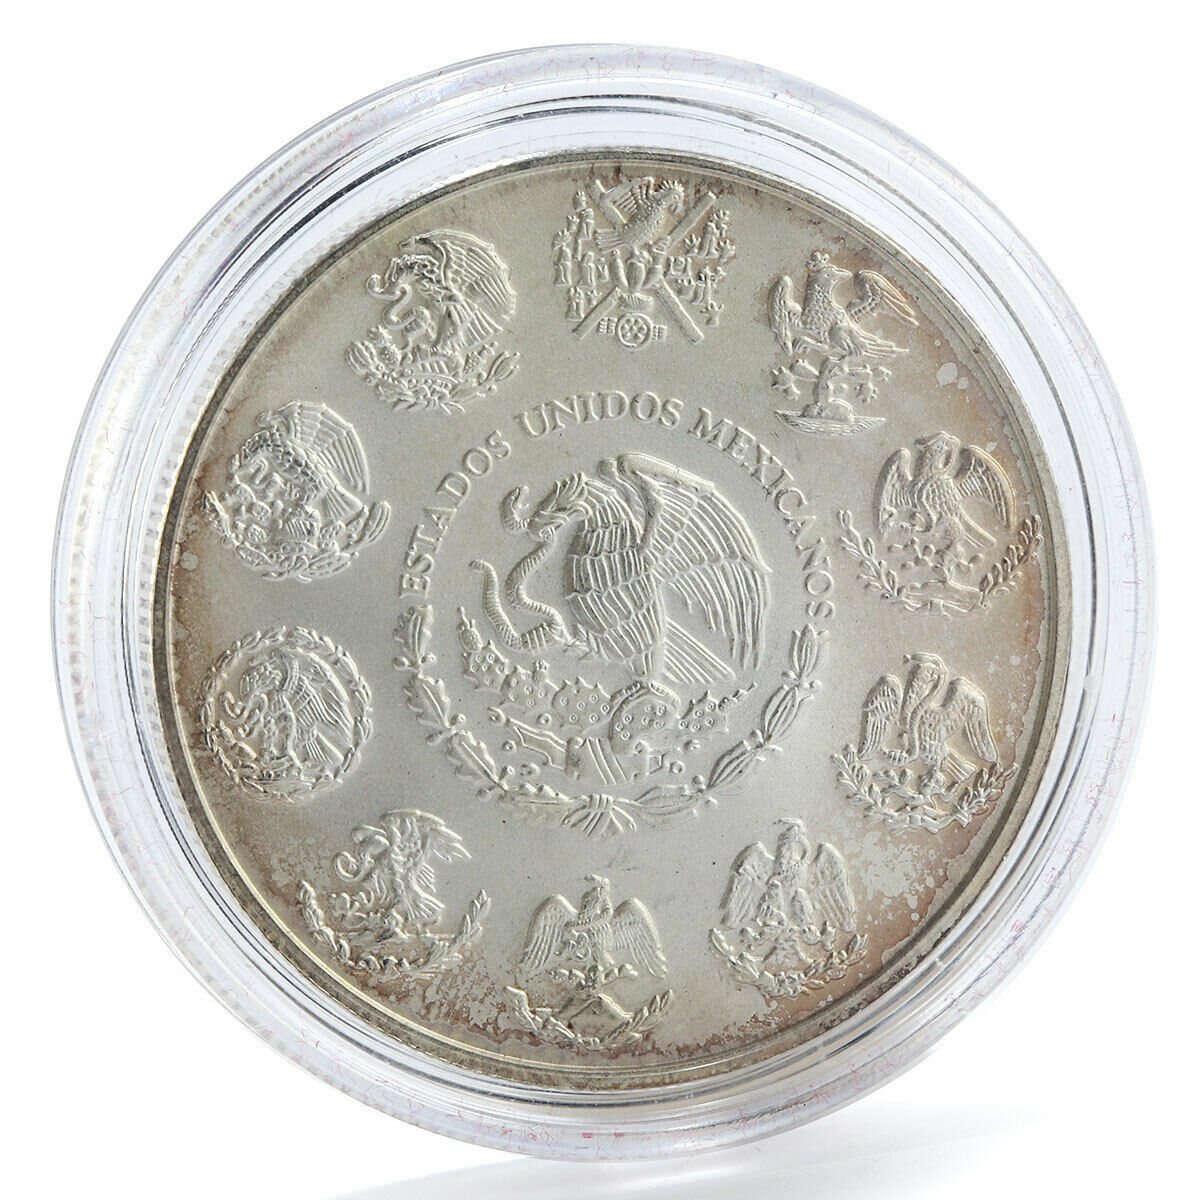 Mexico 1 onza Libertad silver coin 2011